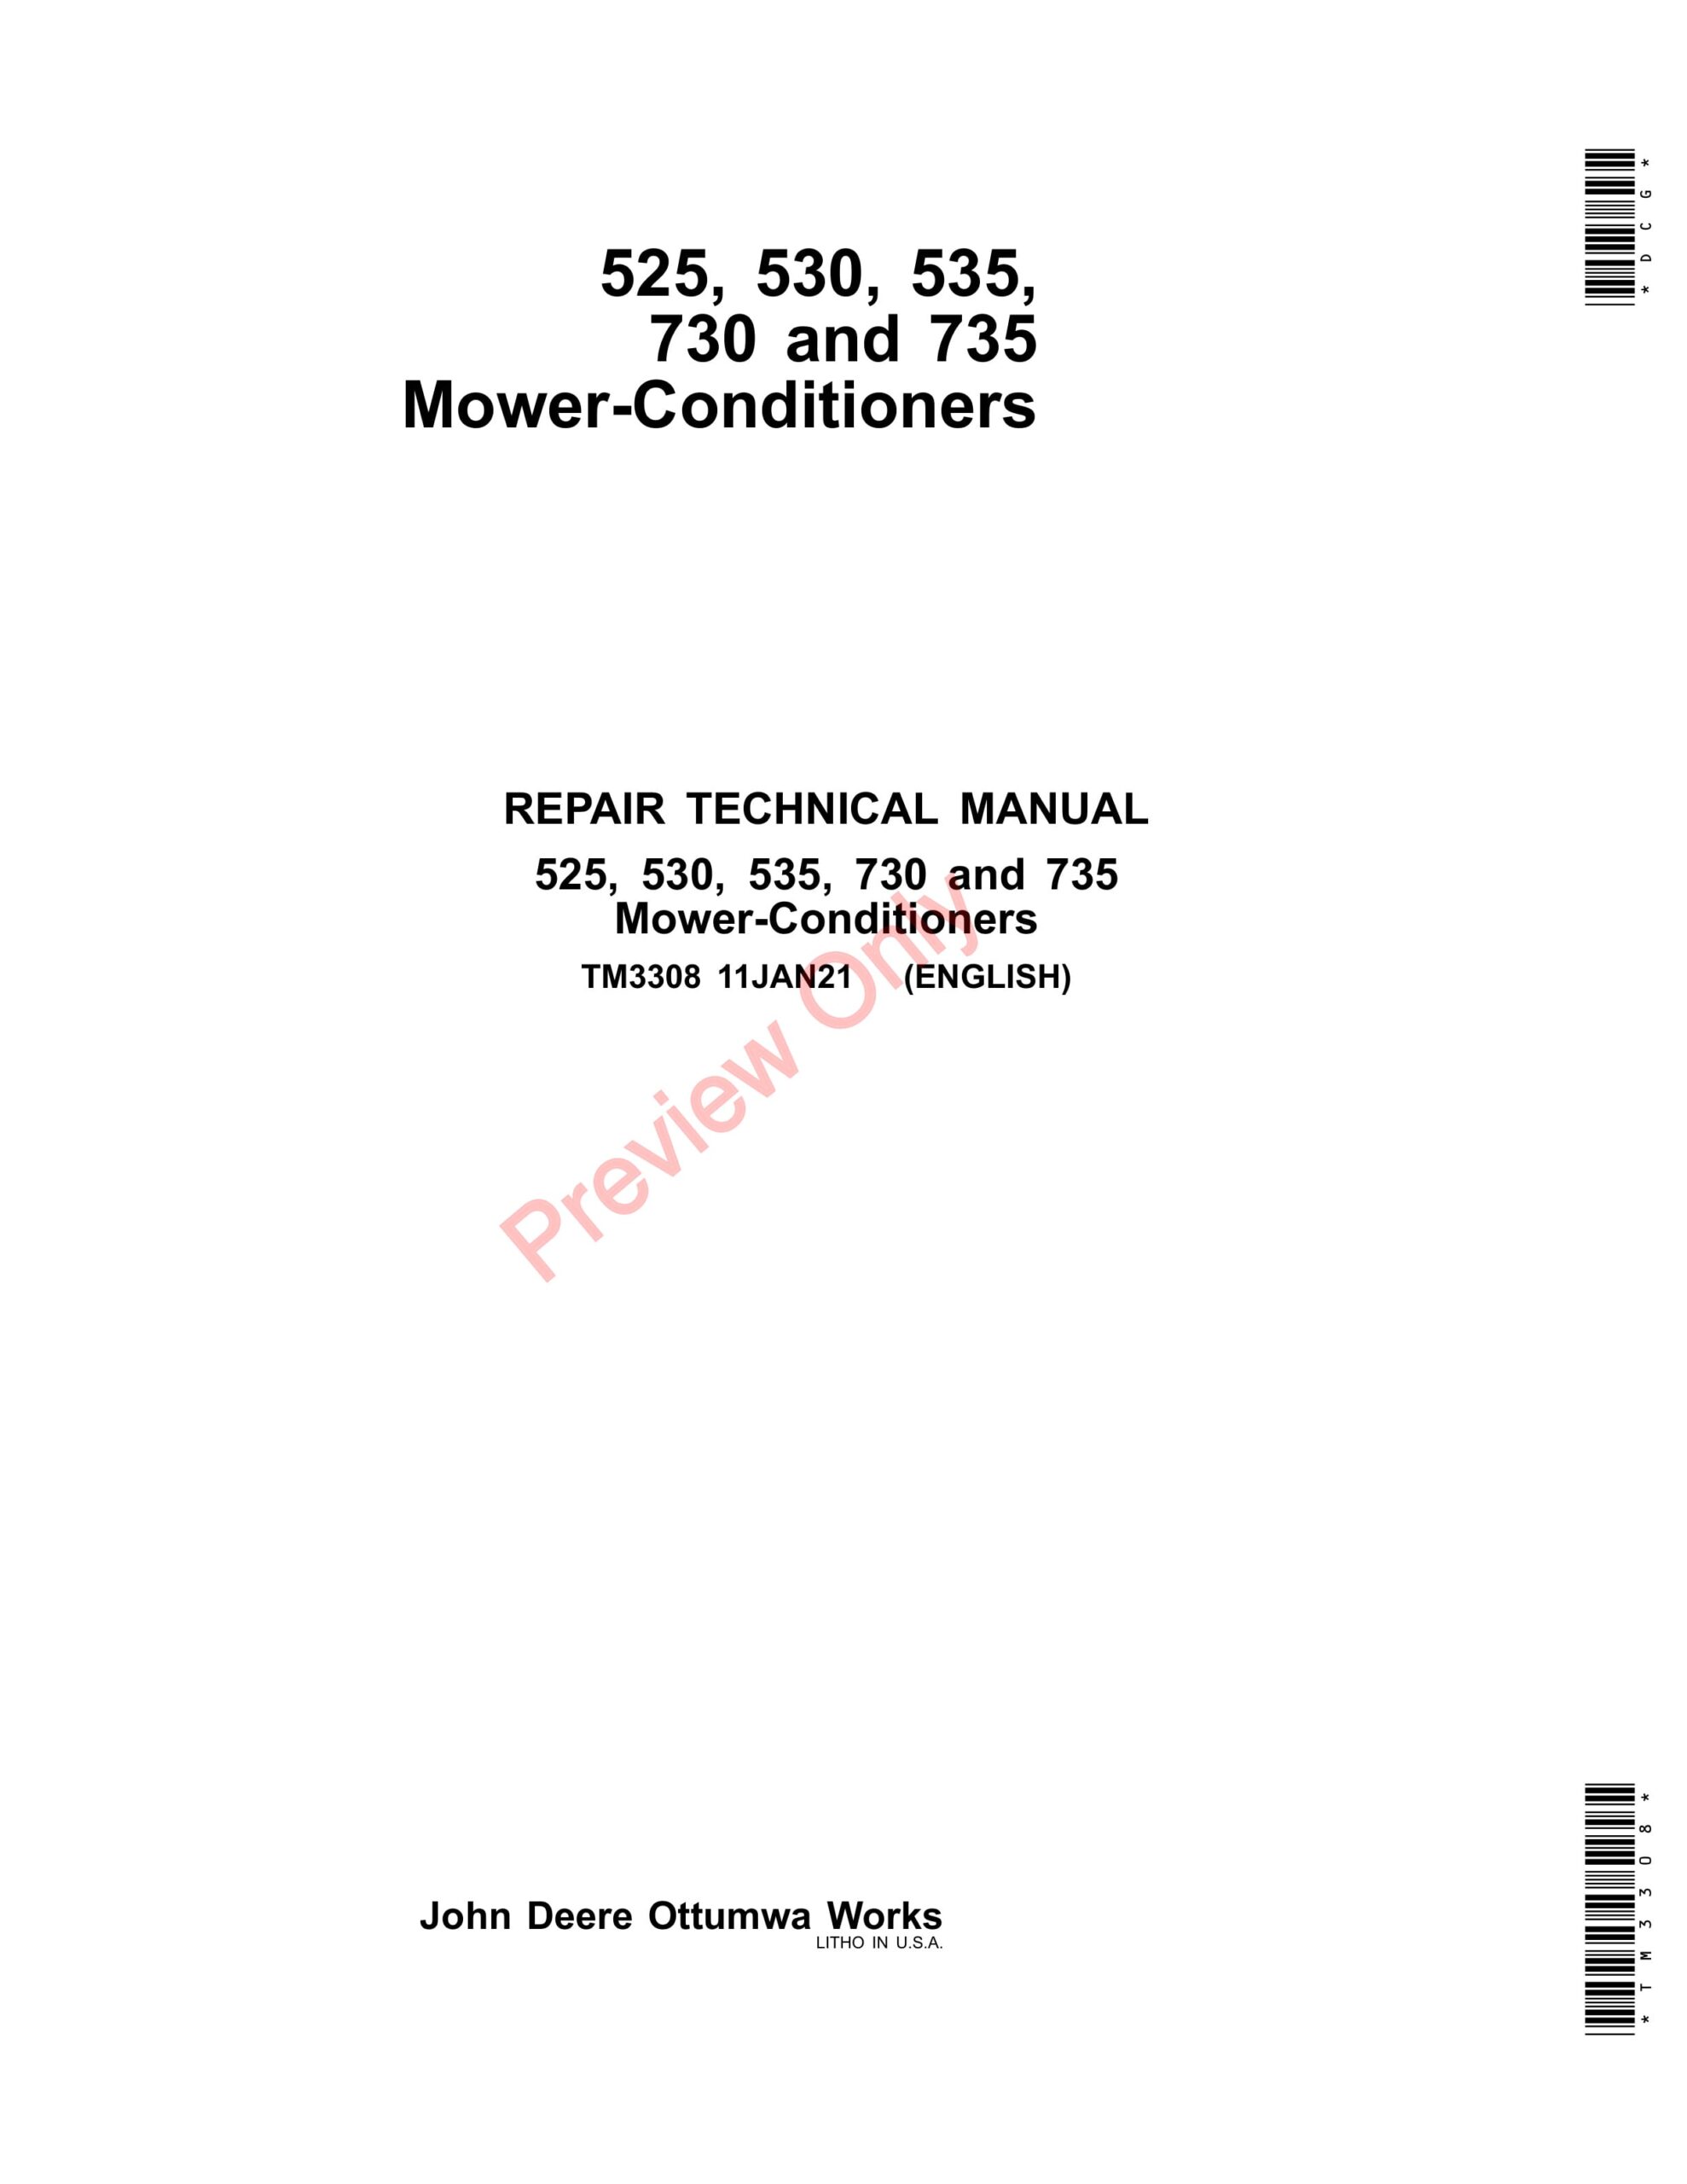 John Deere 525, 530, 535, 730 and 735 Mower-Conditioners Repair Technical Manual TM3308 11JAN21-1